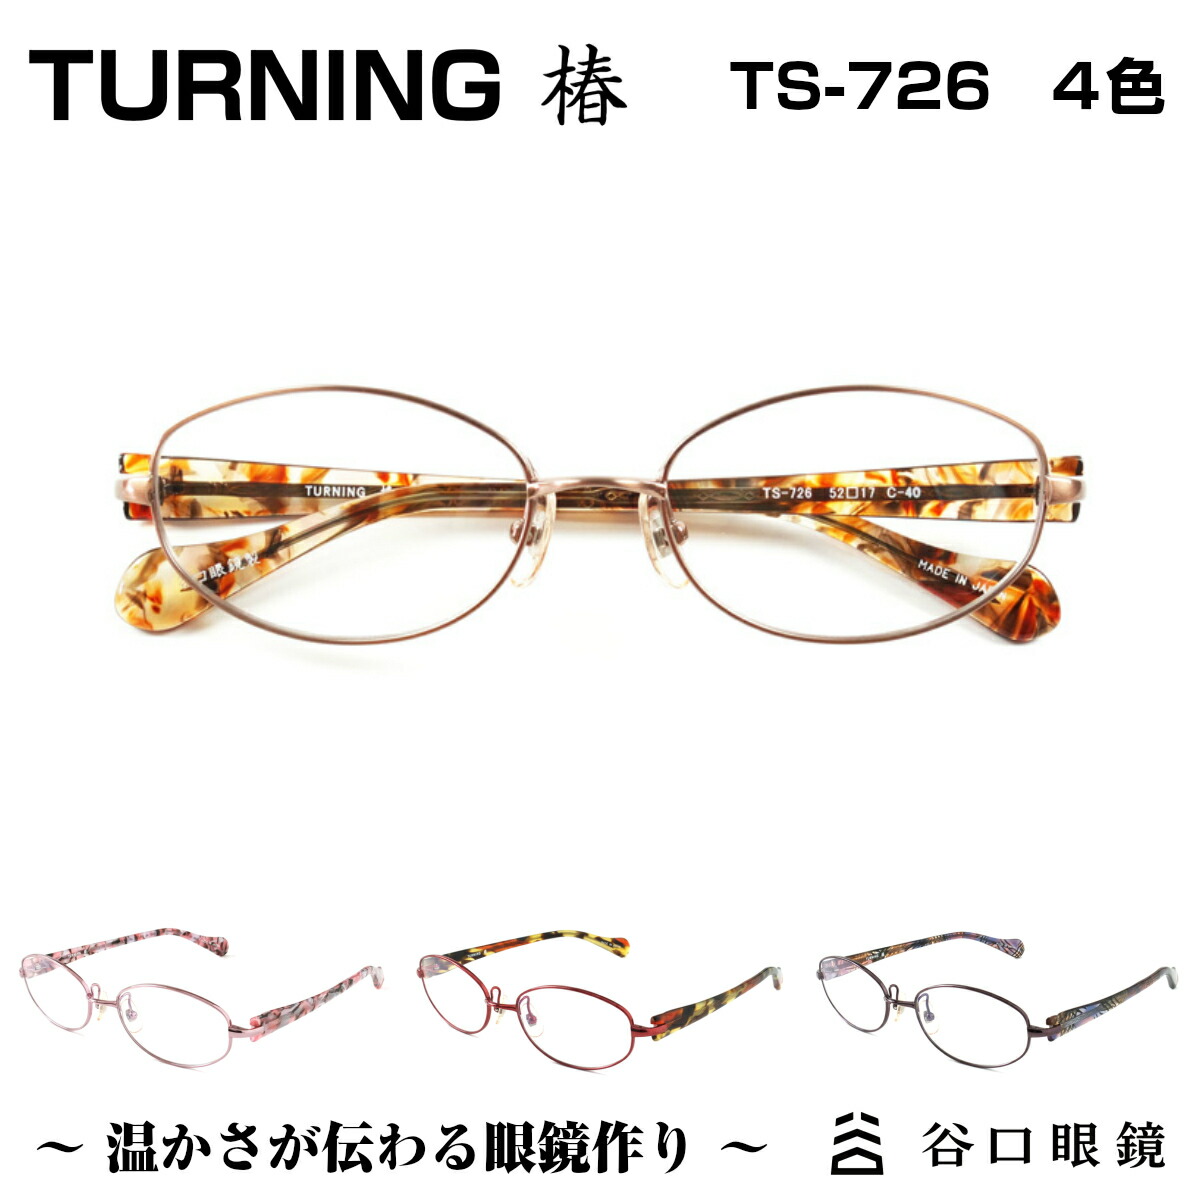 鯖江の職人が作る温かみのある眼鏡 TURNING 椿 谷口眼鏡 TS-726 4色軽さとしなやかさを兼ね備えたレディースモデルです ターニング 4色 メガネ 受注生産品 フレーム 度付き 高級な 日本製 SABAE 国産 鯖江 レディース 軽量 メタル 女性 軽い シンプル